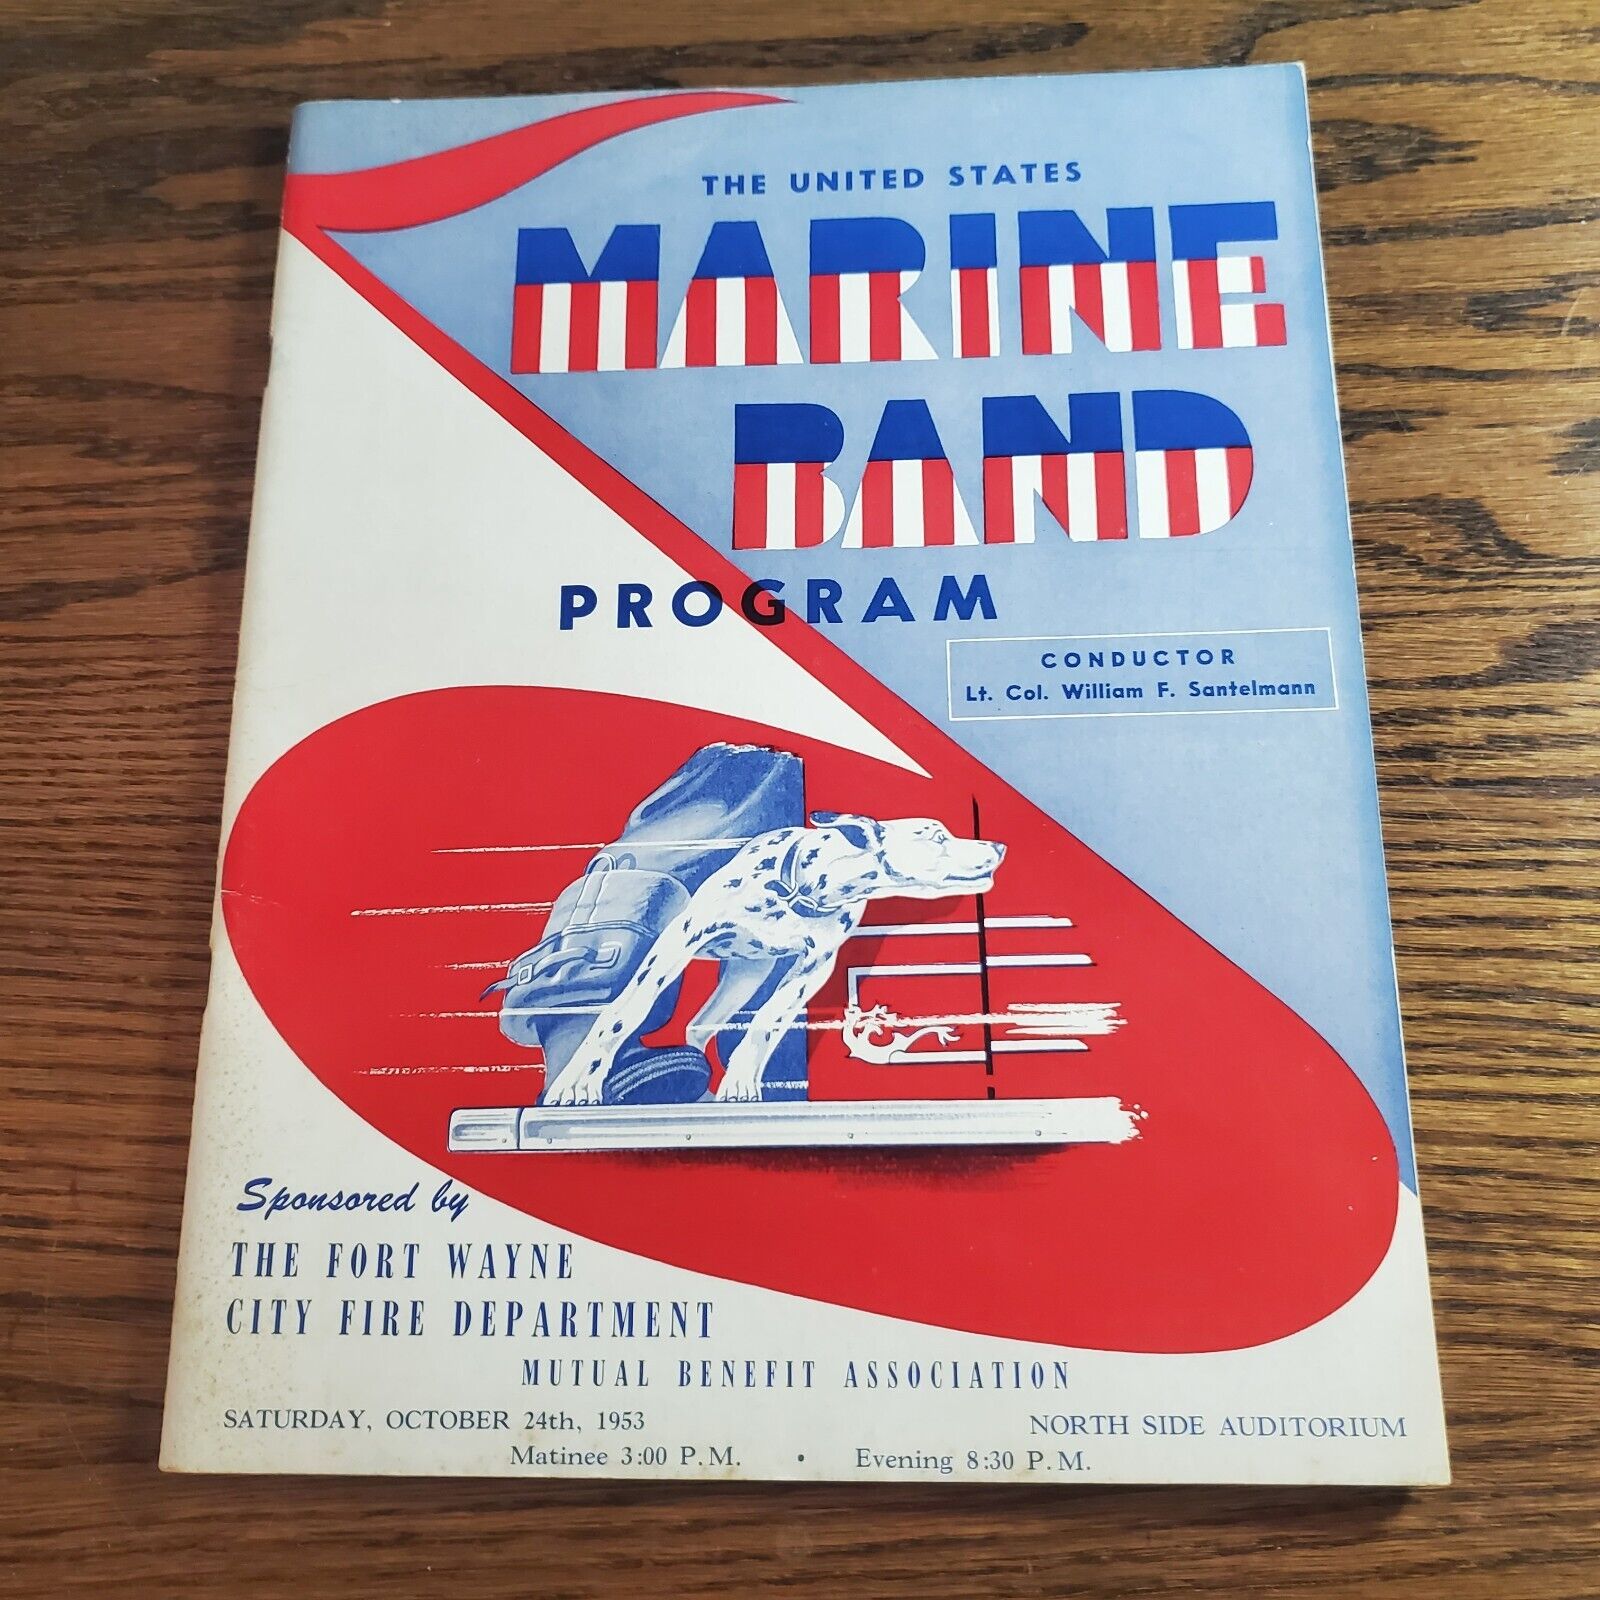 October 24 1953, U.S. Marine Band Program, Concert at North Side Fort Wayne Fire